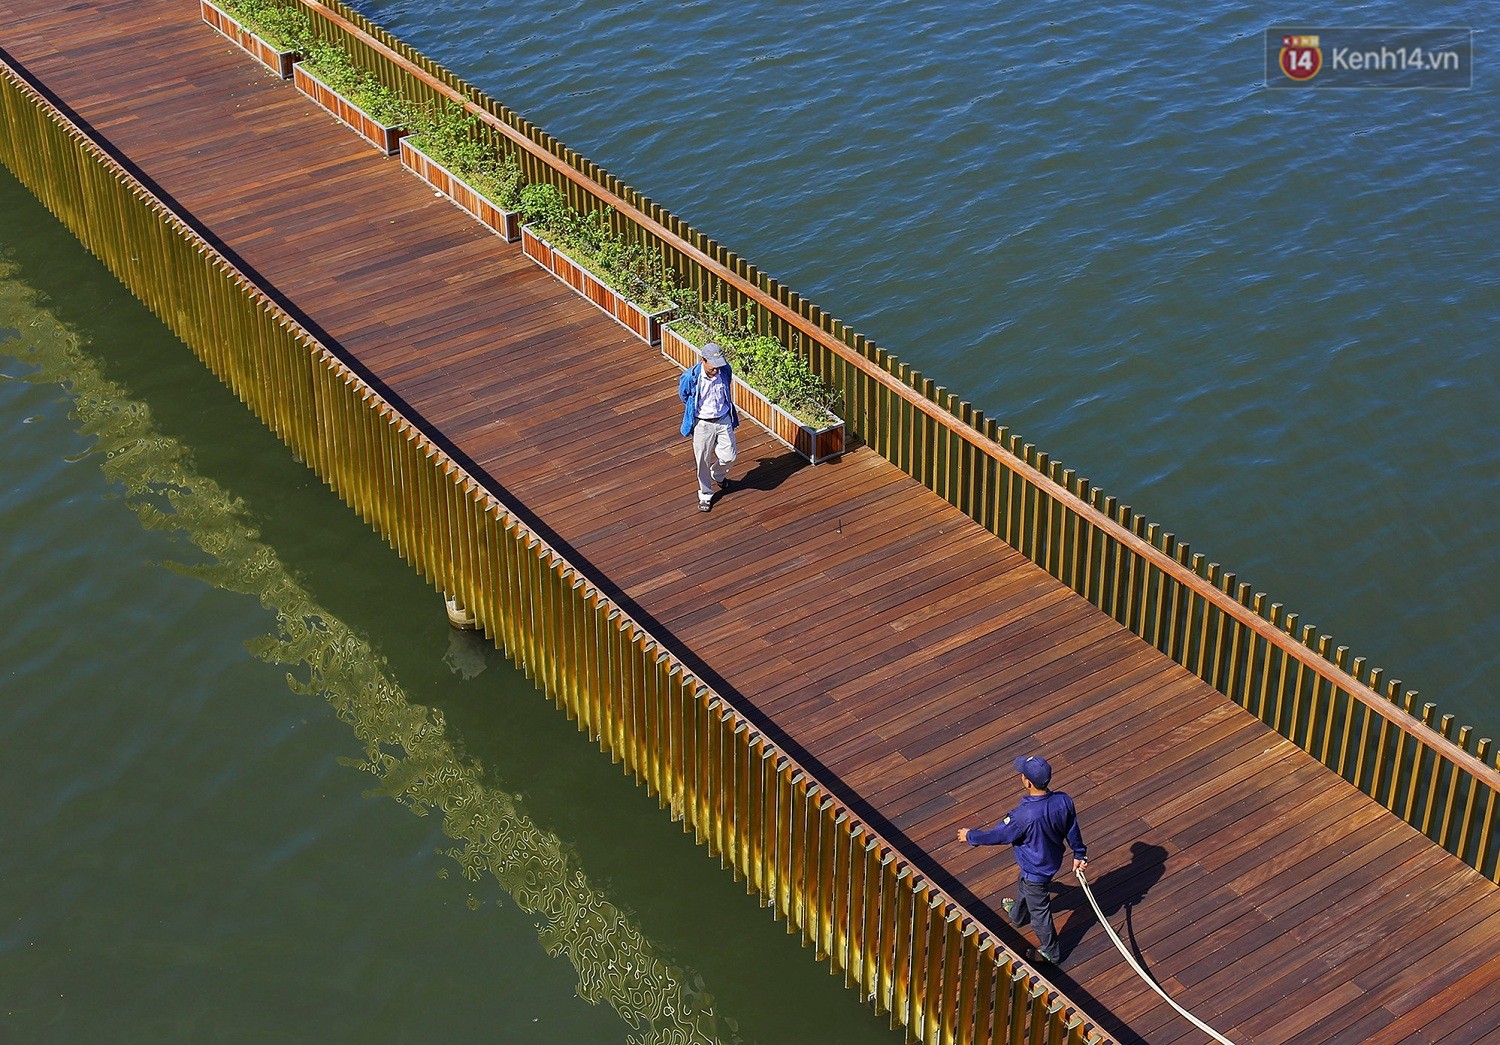 Cầu đi bộ lát gỗ lim 64 tỷ trên sông Hương trở thành địa điểm hot nhất ở Huế dù chưa khánh thành - Ảnh 12.